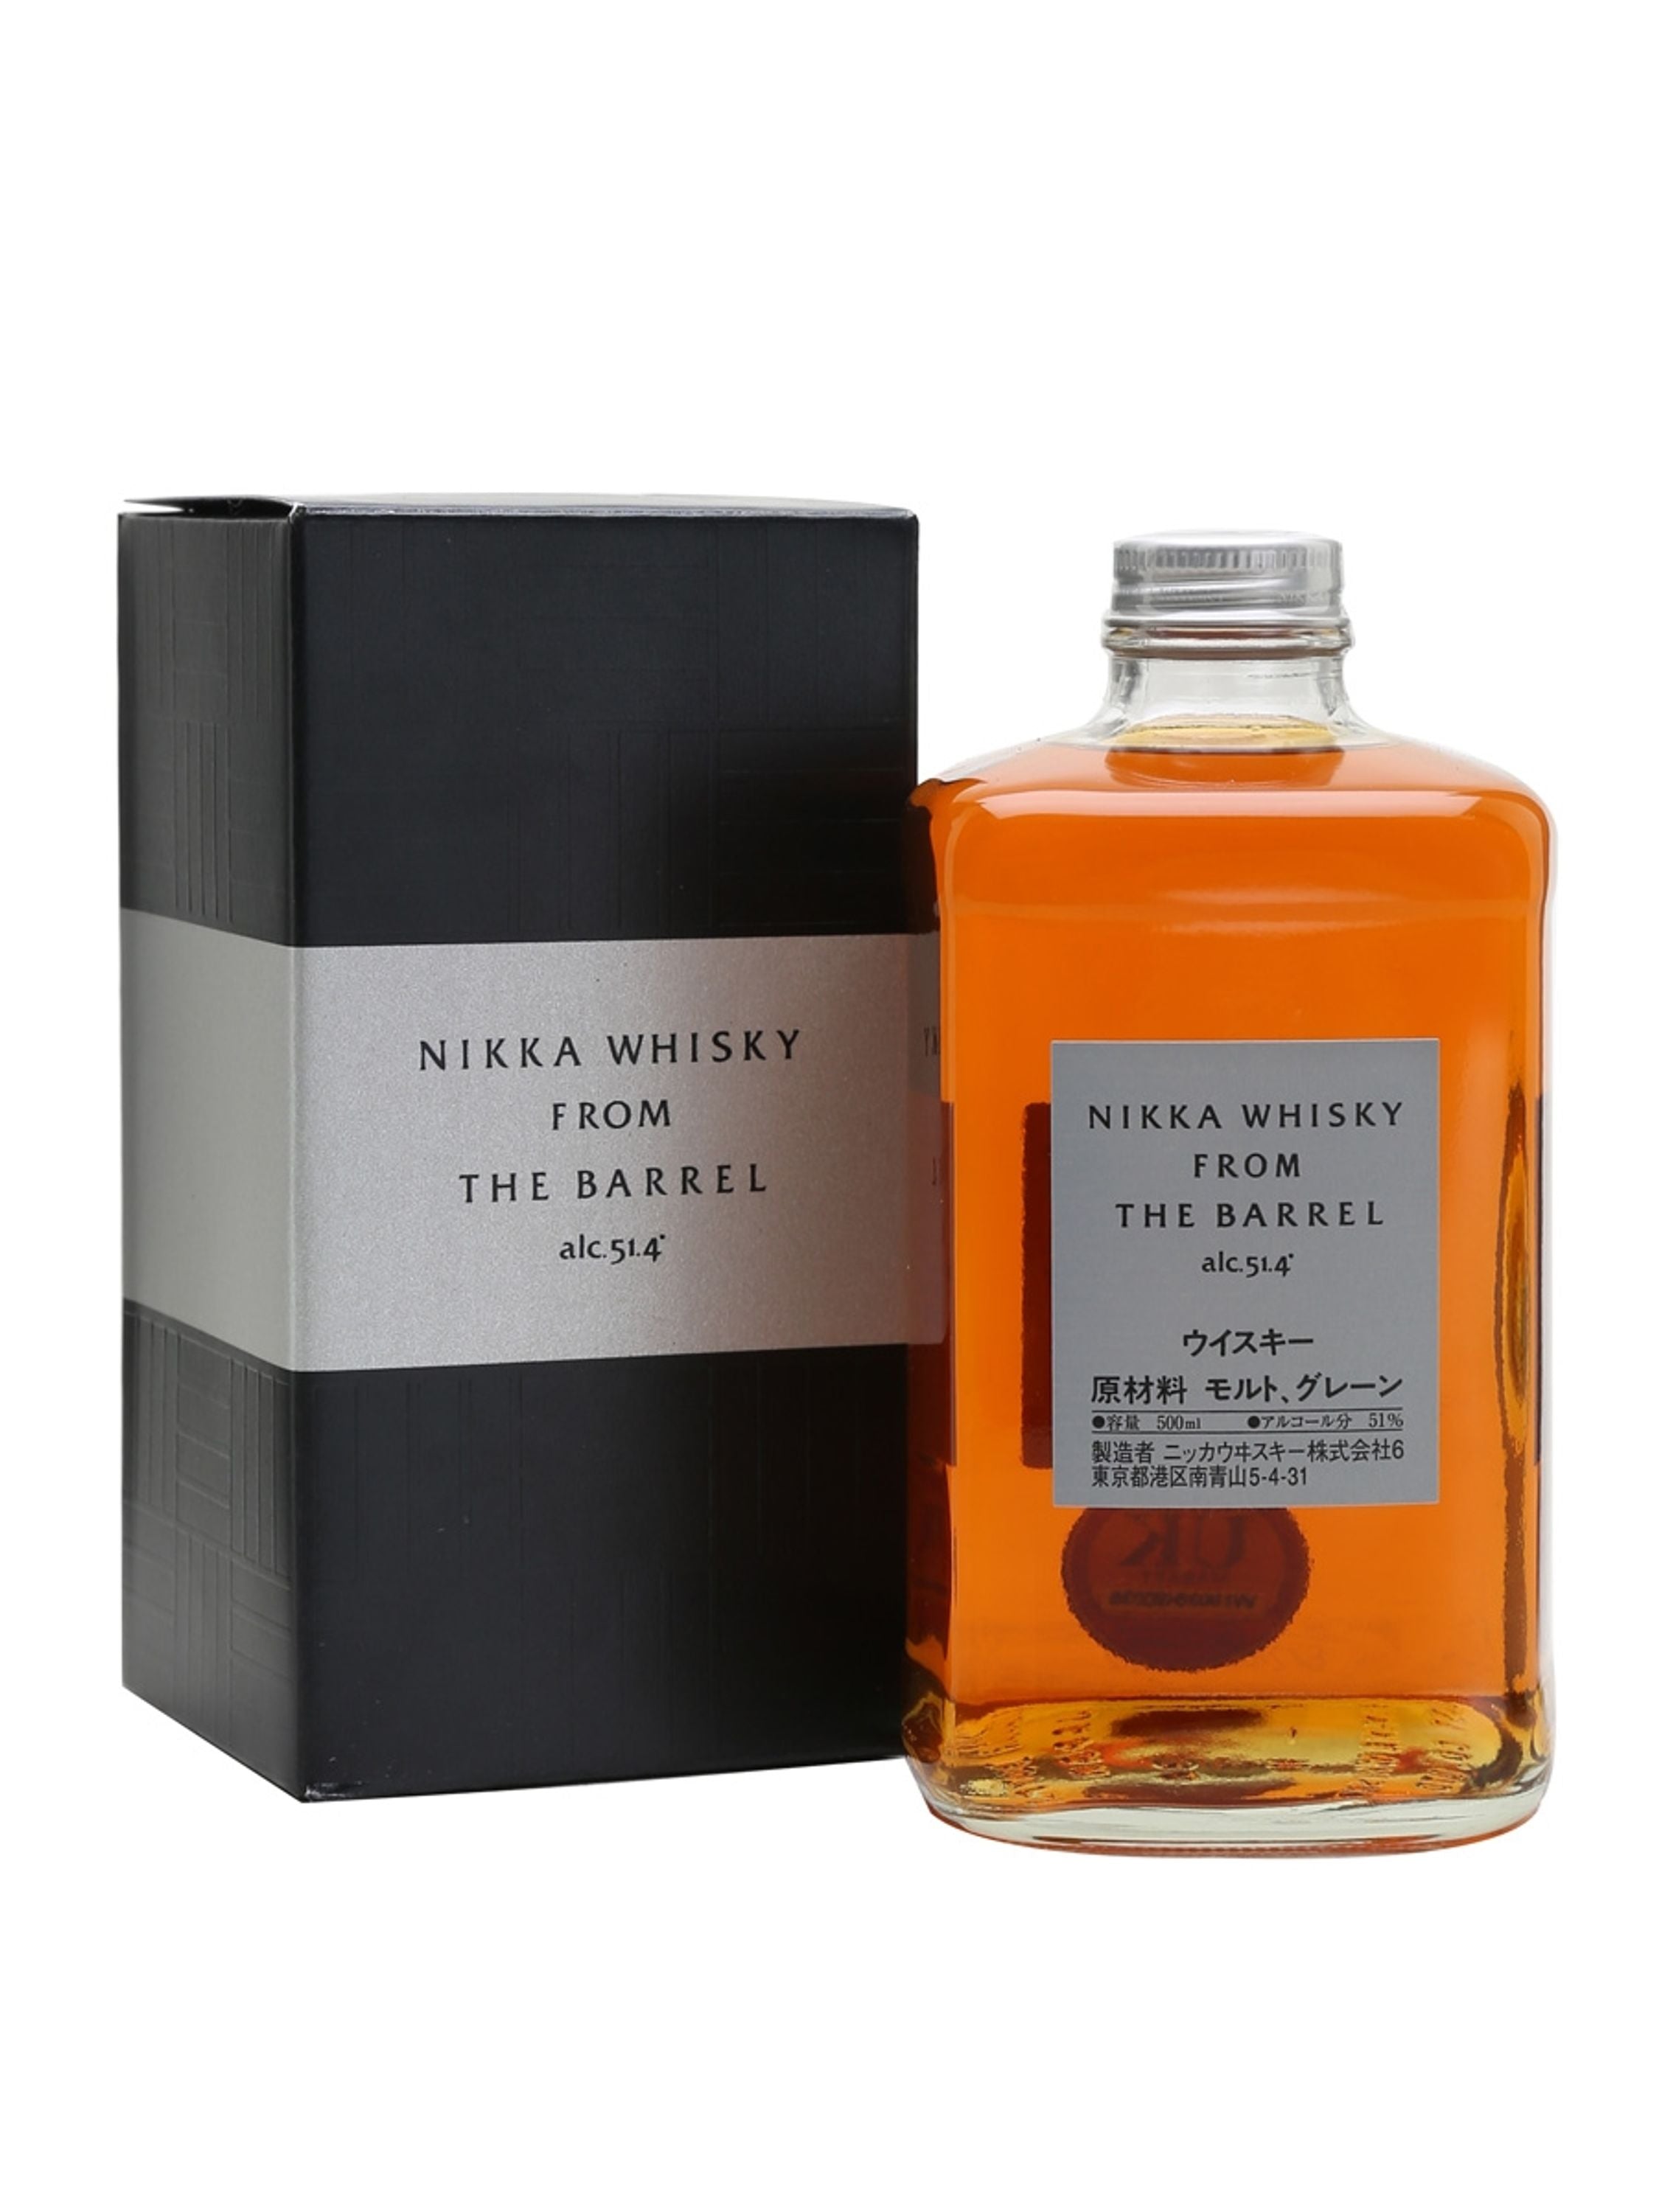 Nikka From the Barrel Blended Whisky 0,5l, alk. 51,4 tilavuusprosenttia.